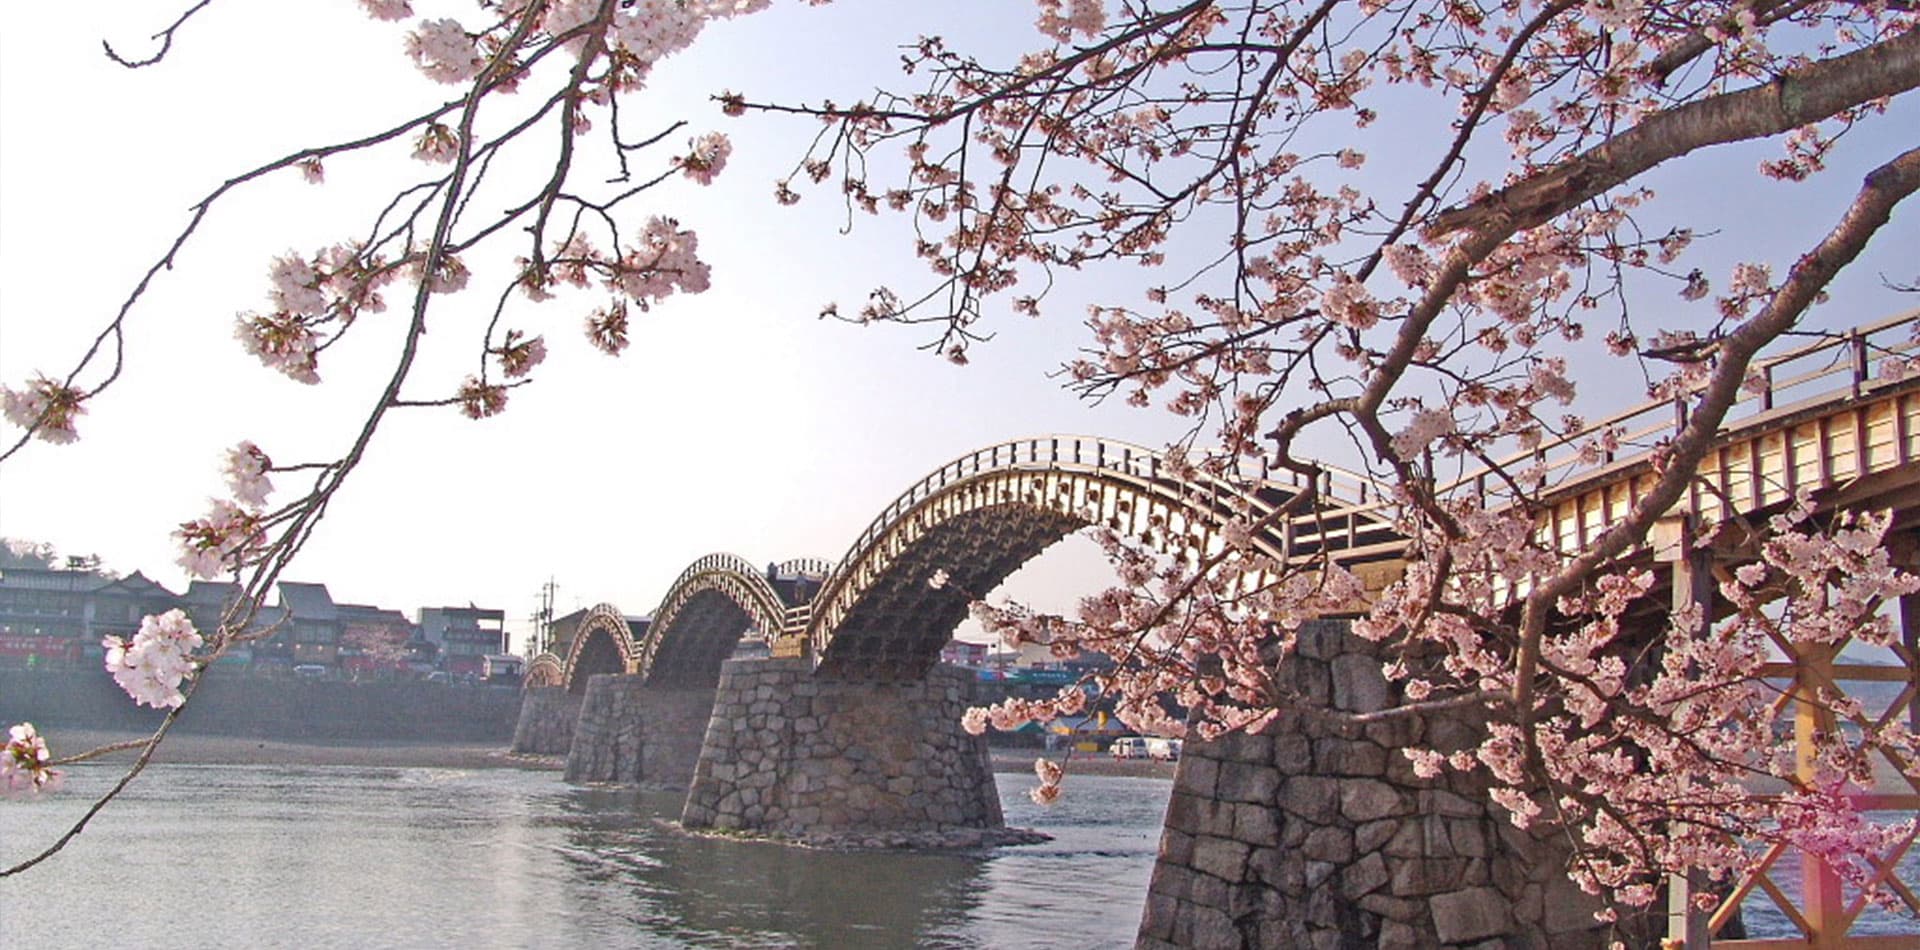 日本三大名桥之一的锦带桥